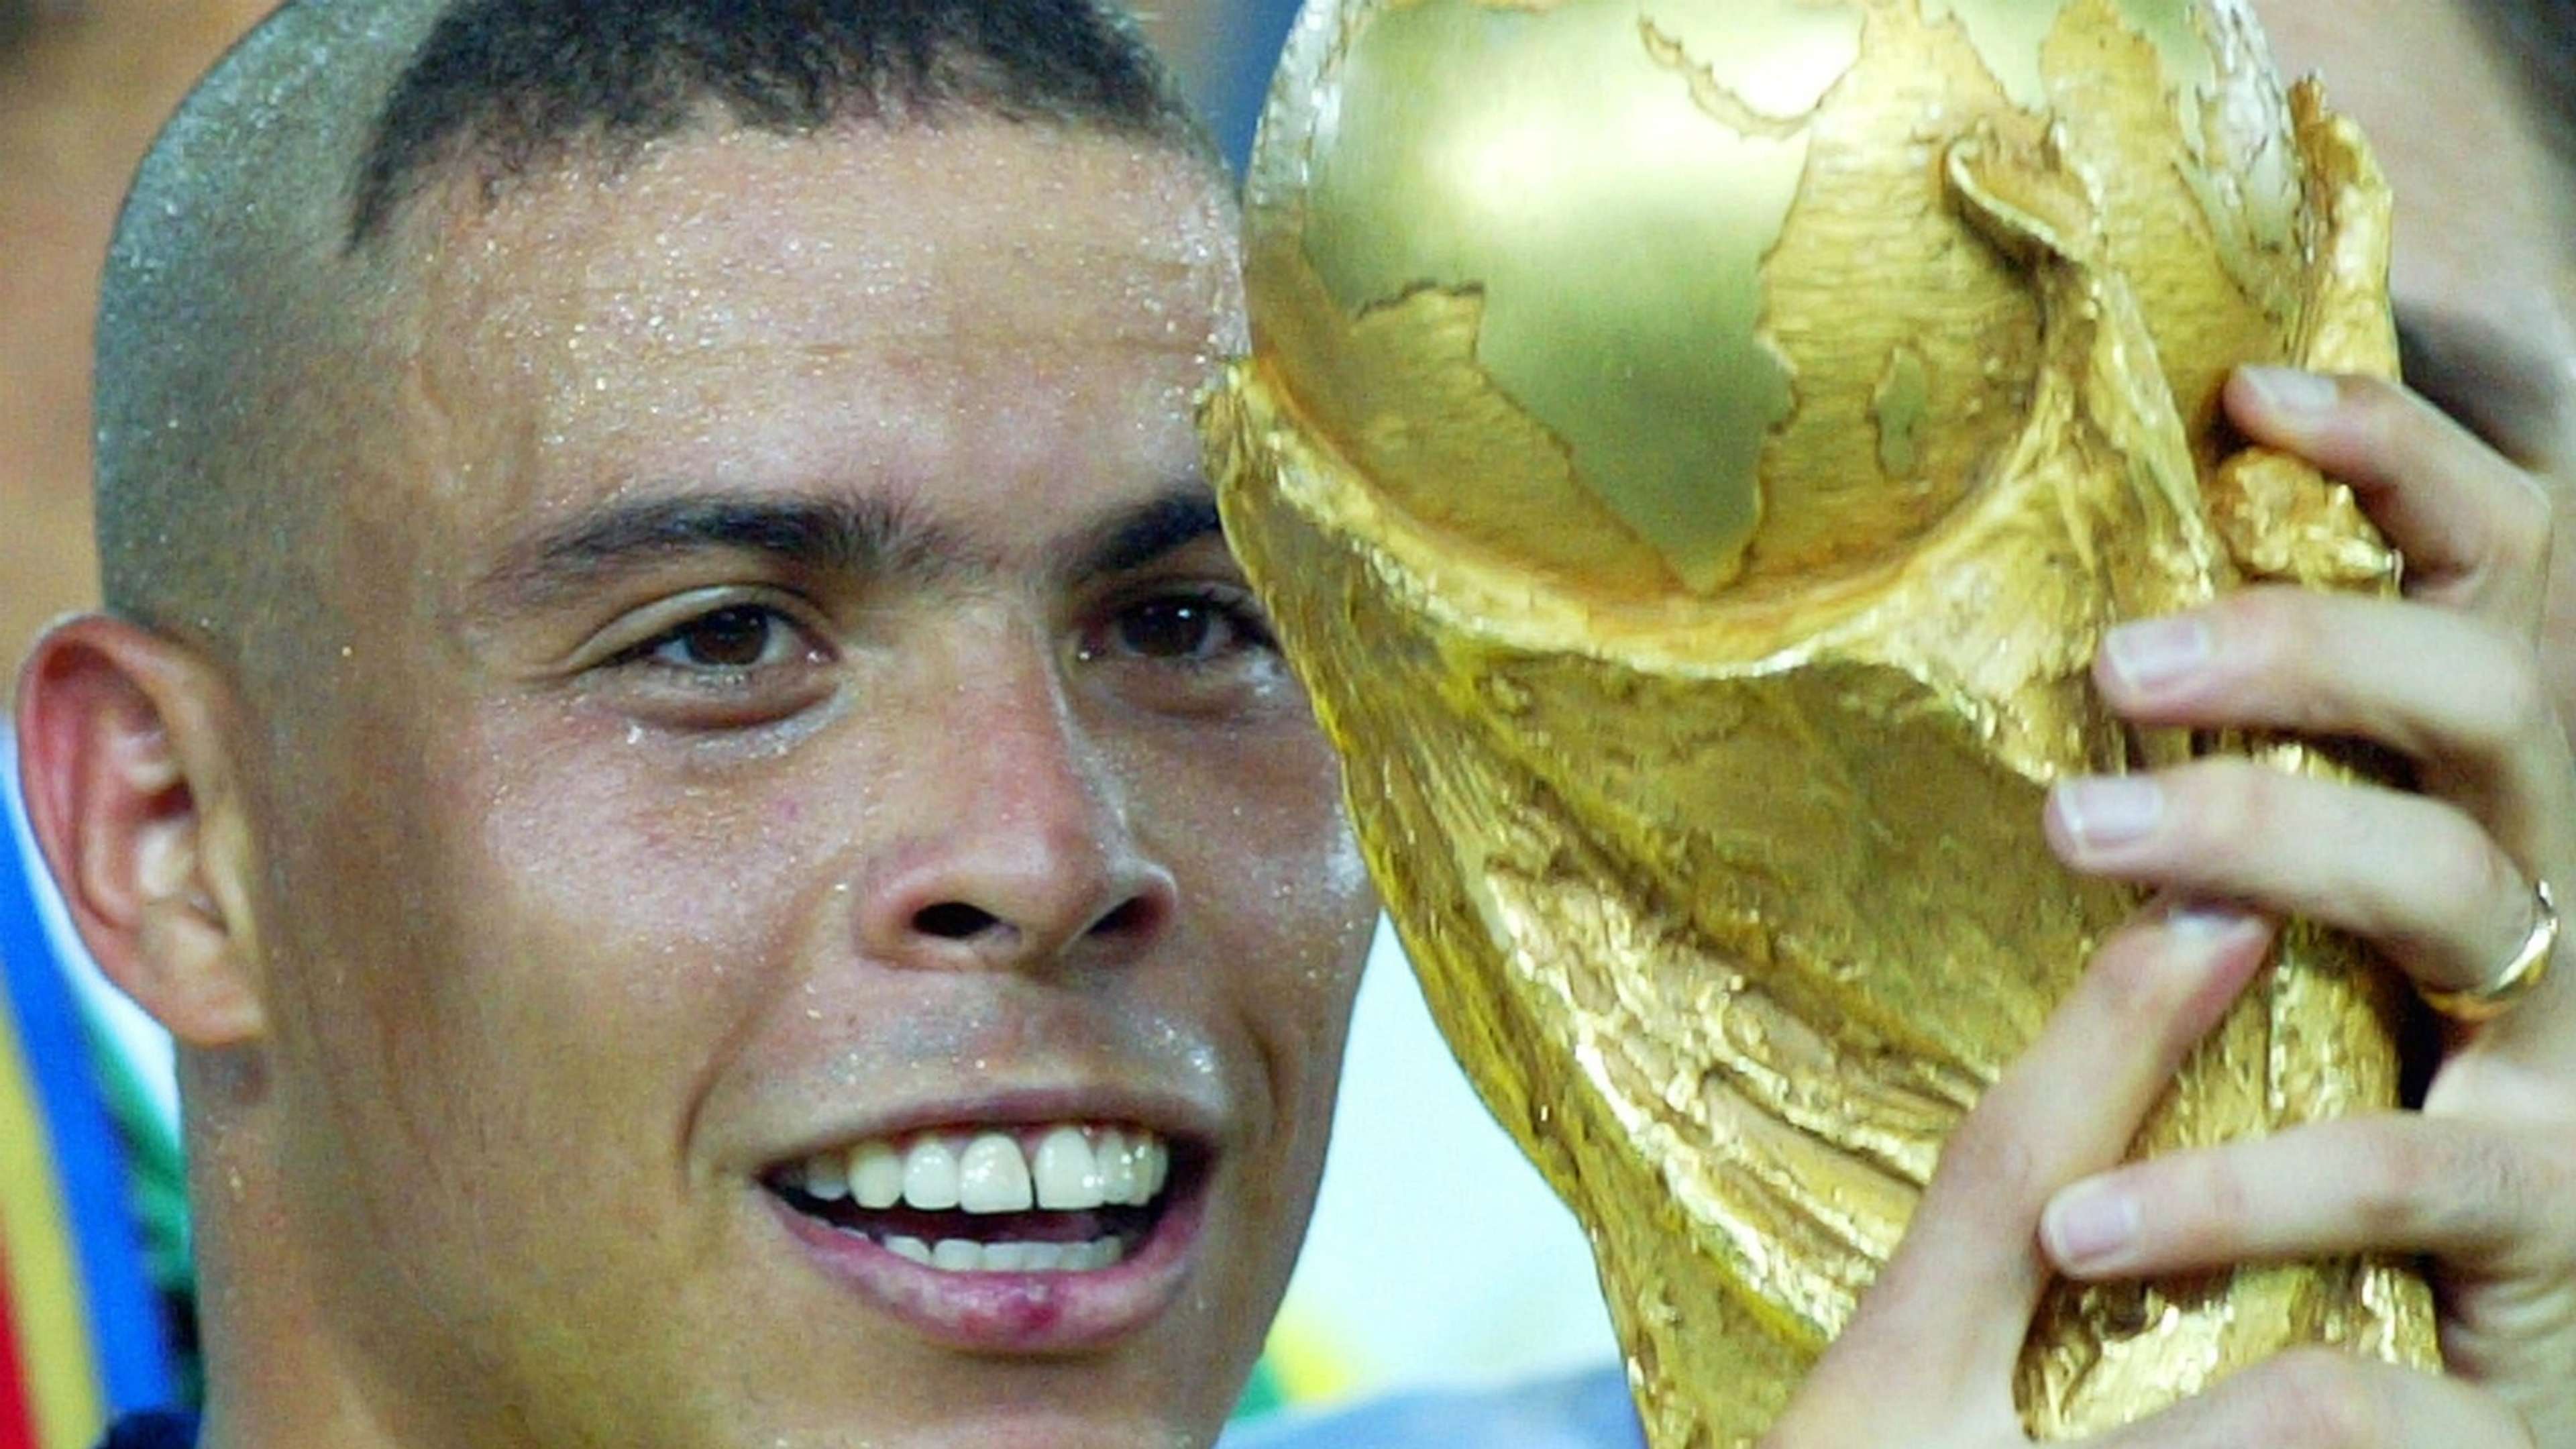 Ronaldo|Brasil|2002